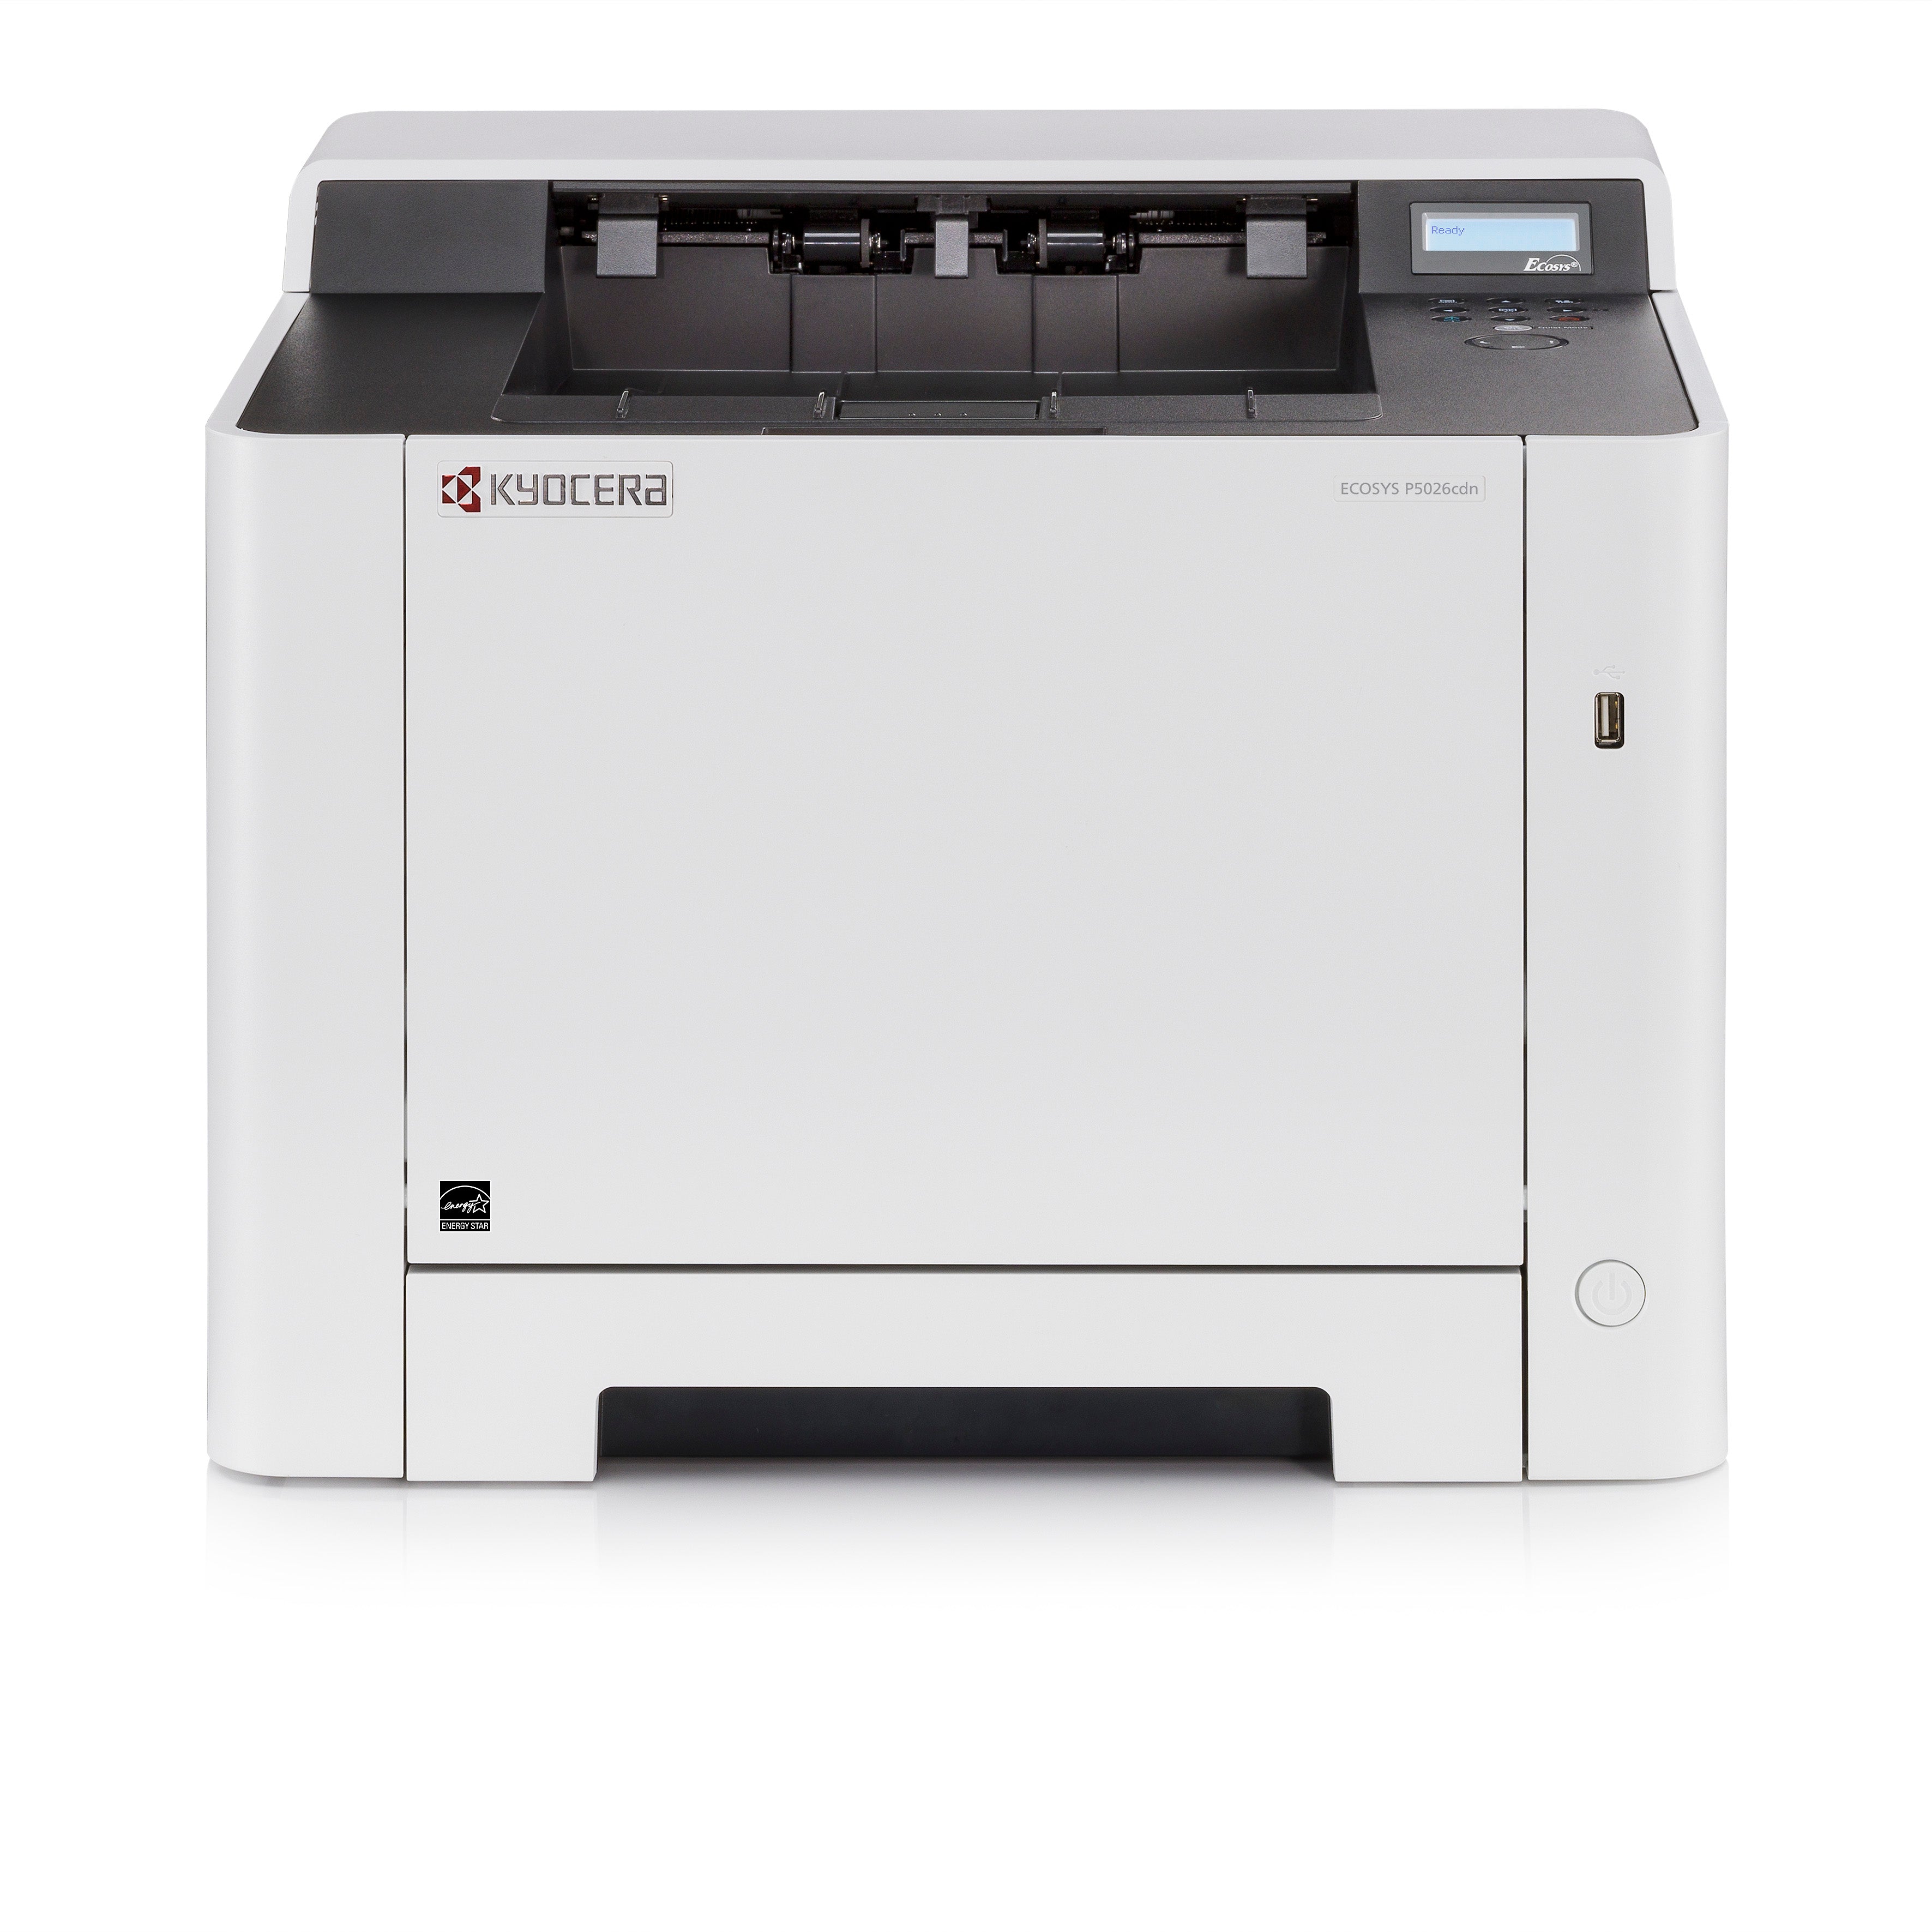 Kyocera ECOSYS P5026cdn A4 Colour Laser Printer - The Printer Clinic